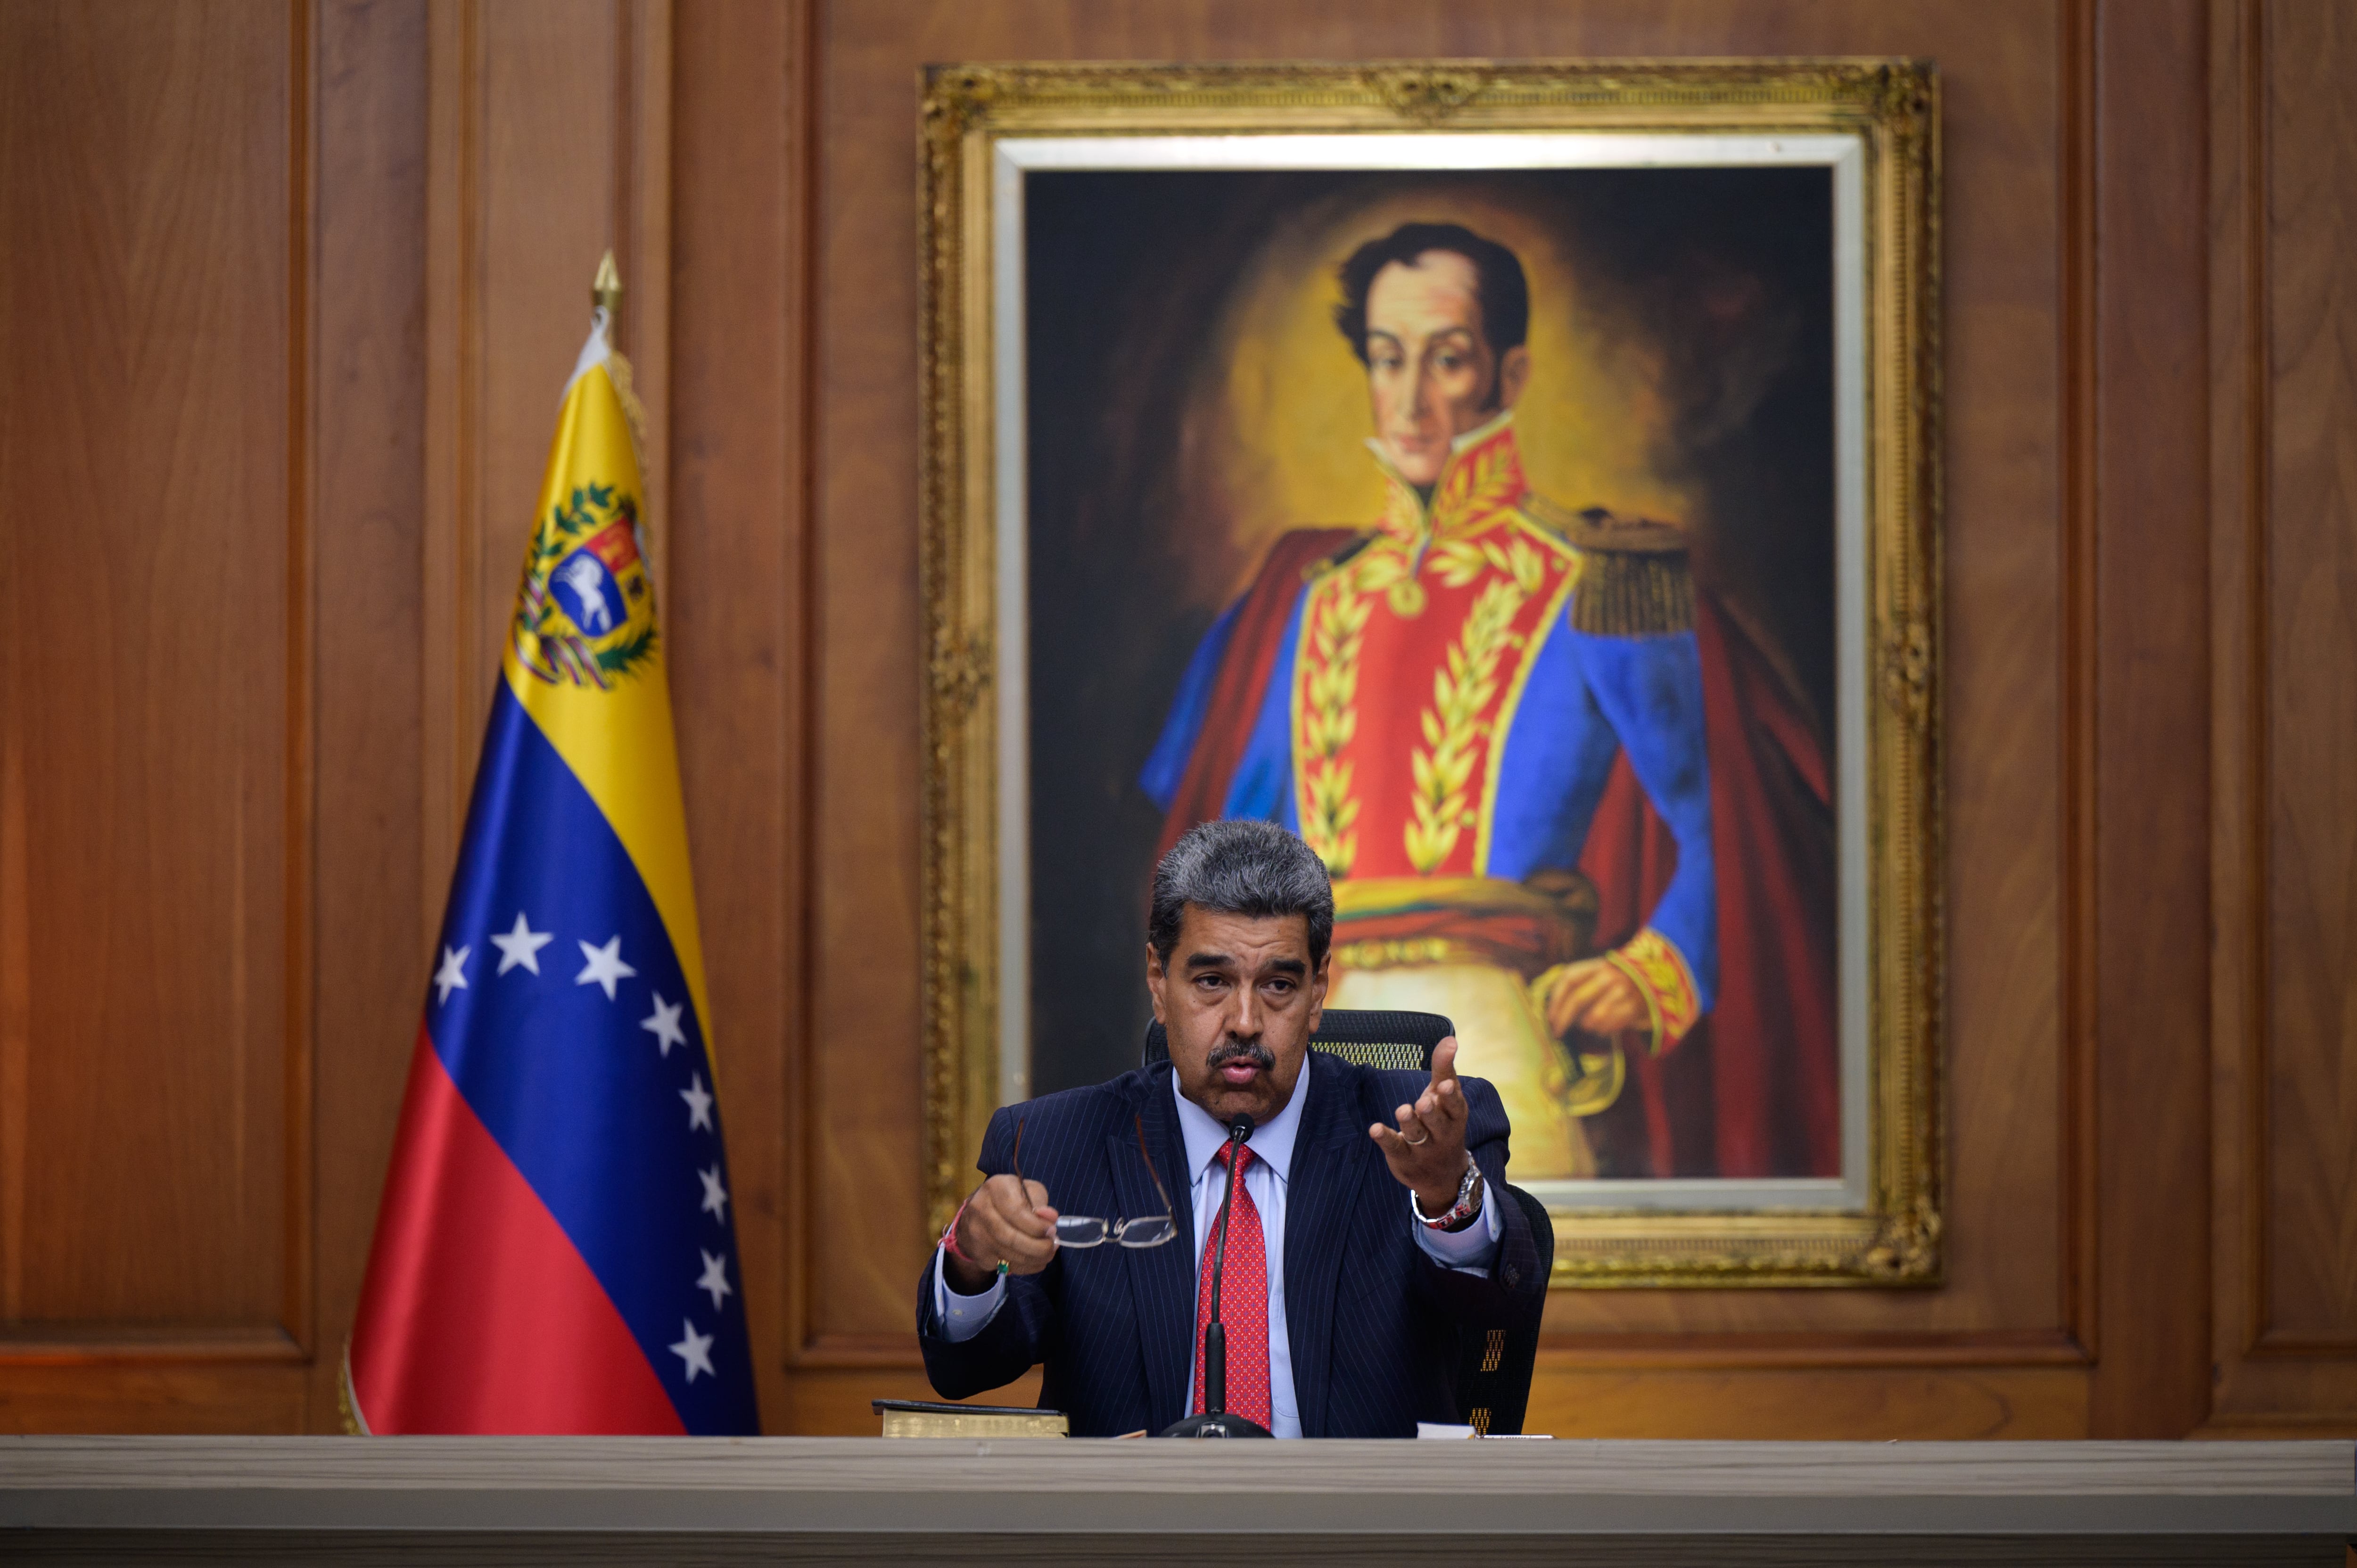 Nicolás Maduro quiere encerrar a Machado y Edmundo González por 30 años; los culpa de promover violencia